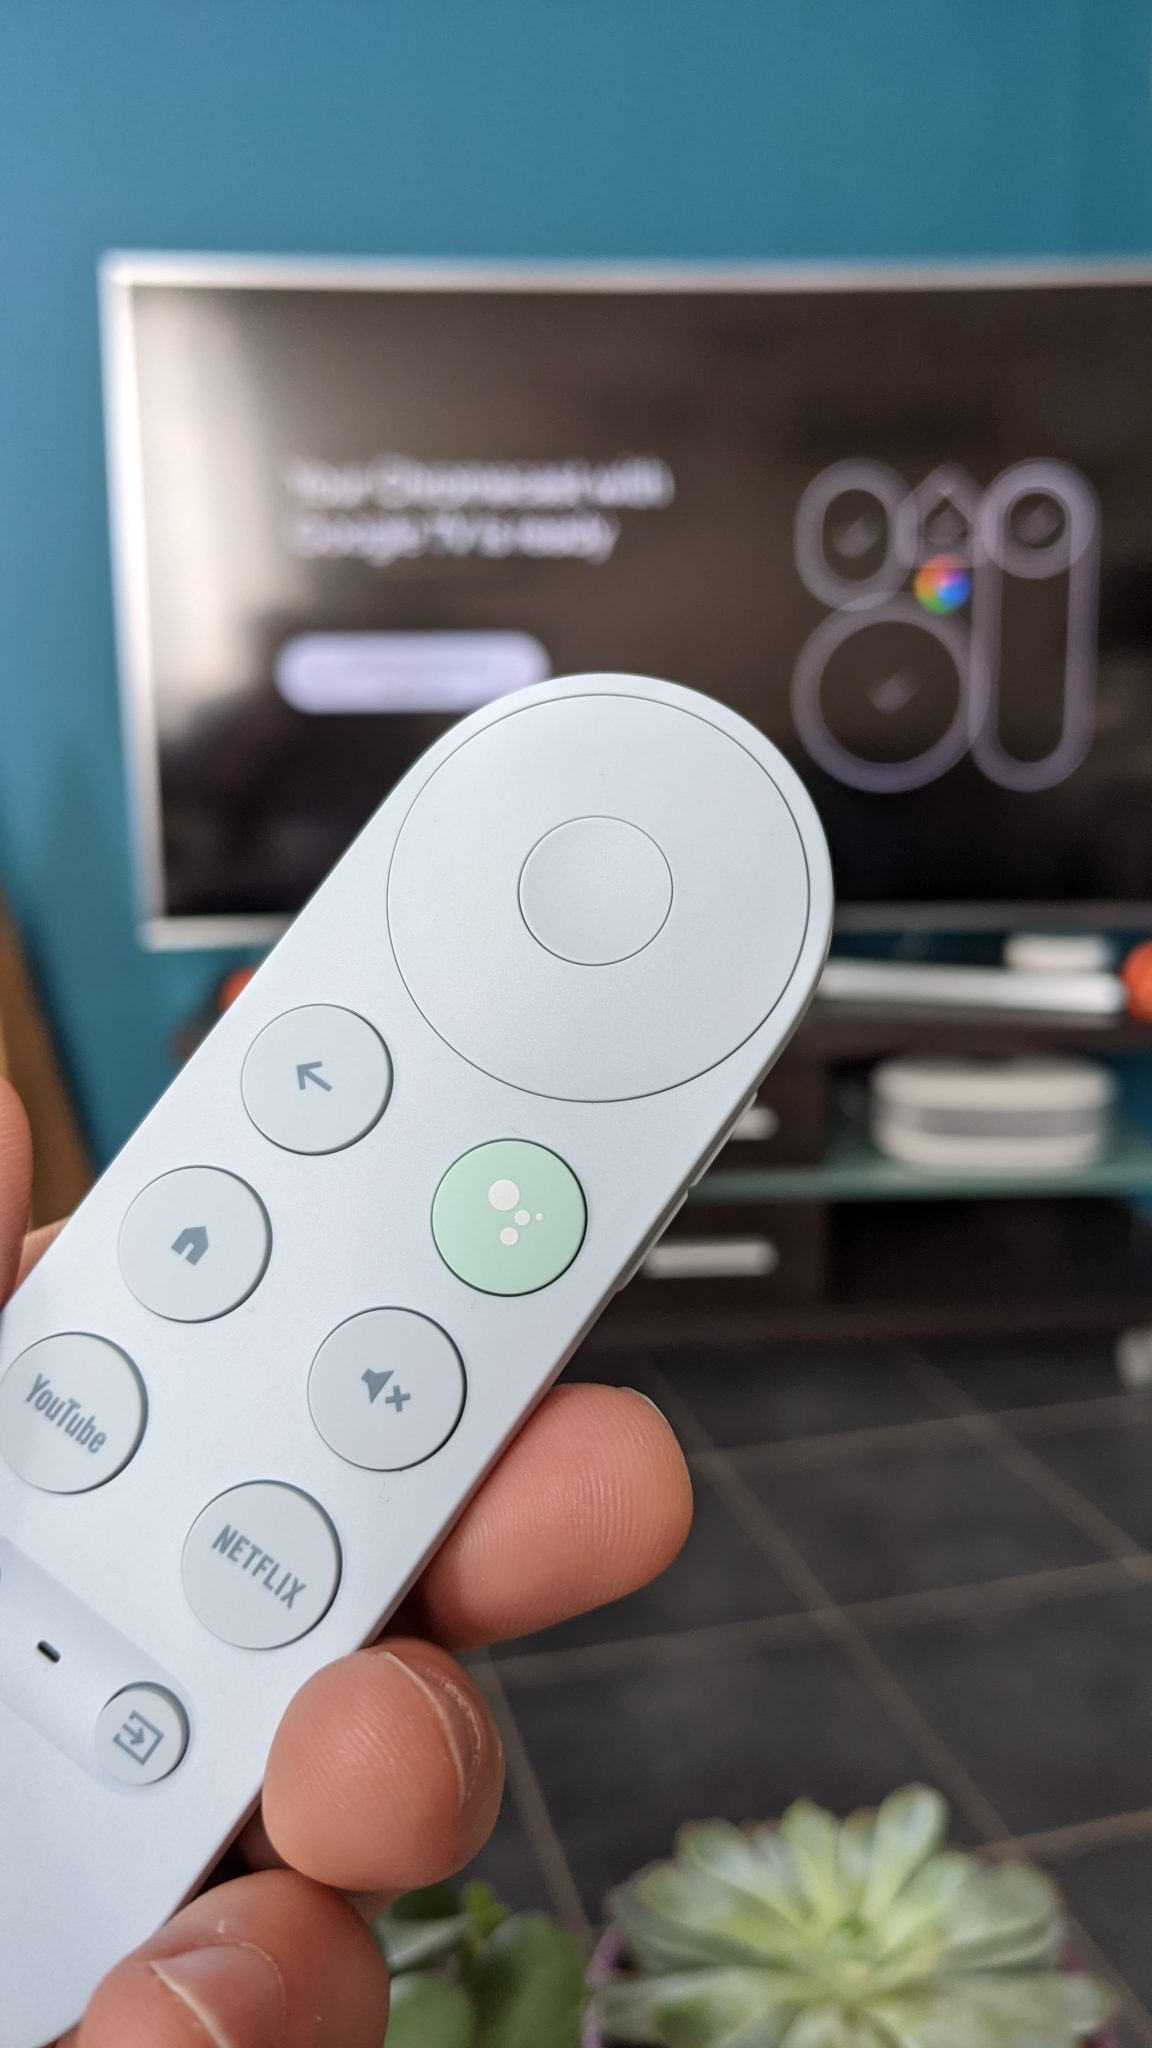 Chromecast avec Google Tv la meilleure clé pour une télé connectée